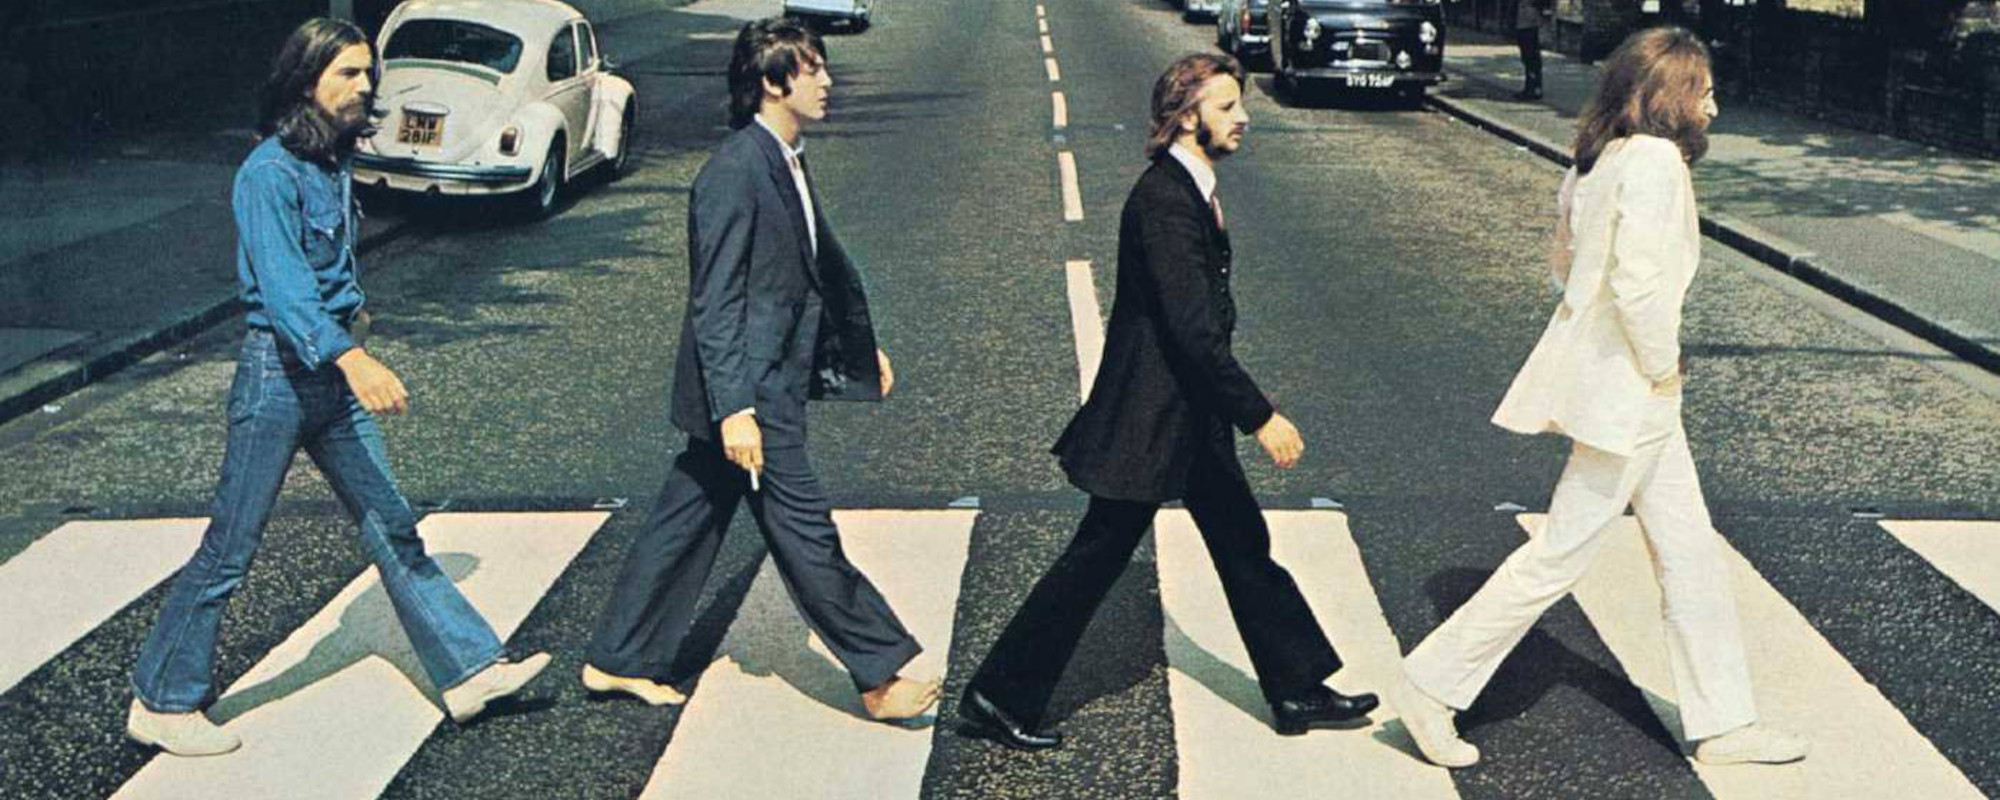 Watch: Paul McCartney, Elton John Discuss Abbey Road’s Legacy in New Documentary Trailer